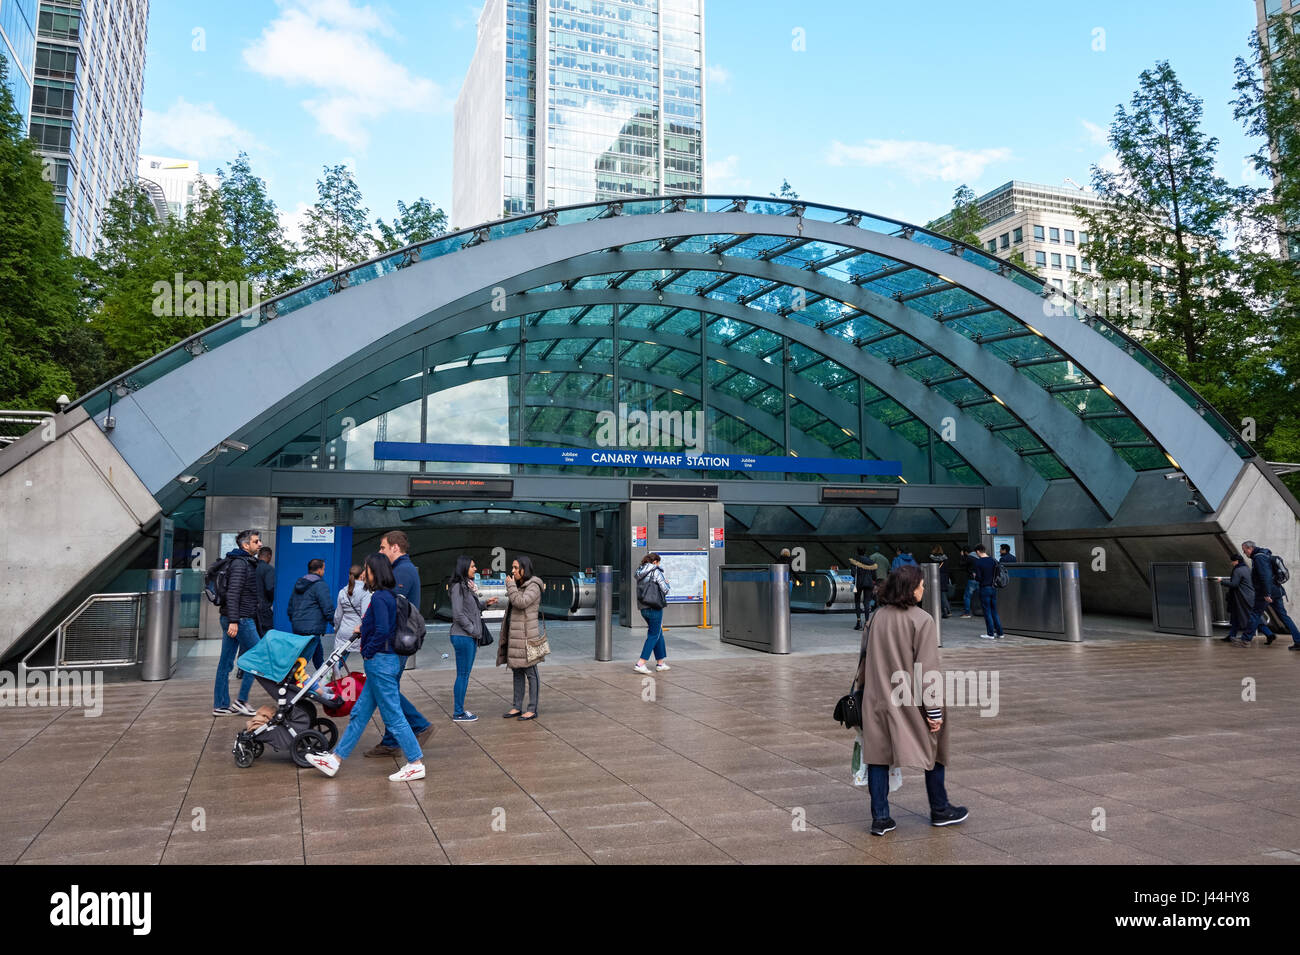 Entrée de la station de métro de Canary Wharf, Londres Angleterre Royaume-Uni UK Banque D'Images